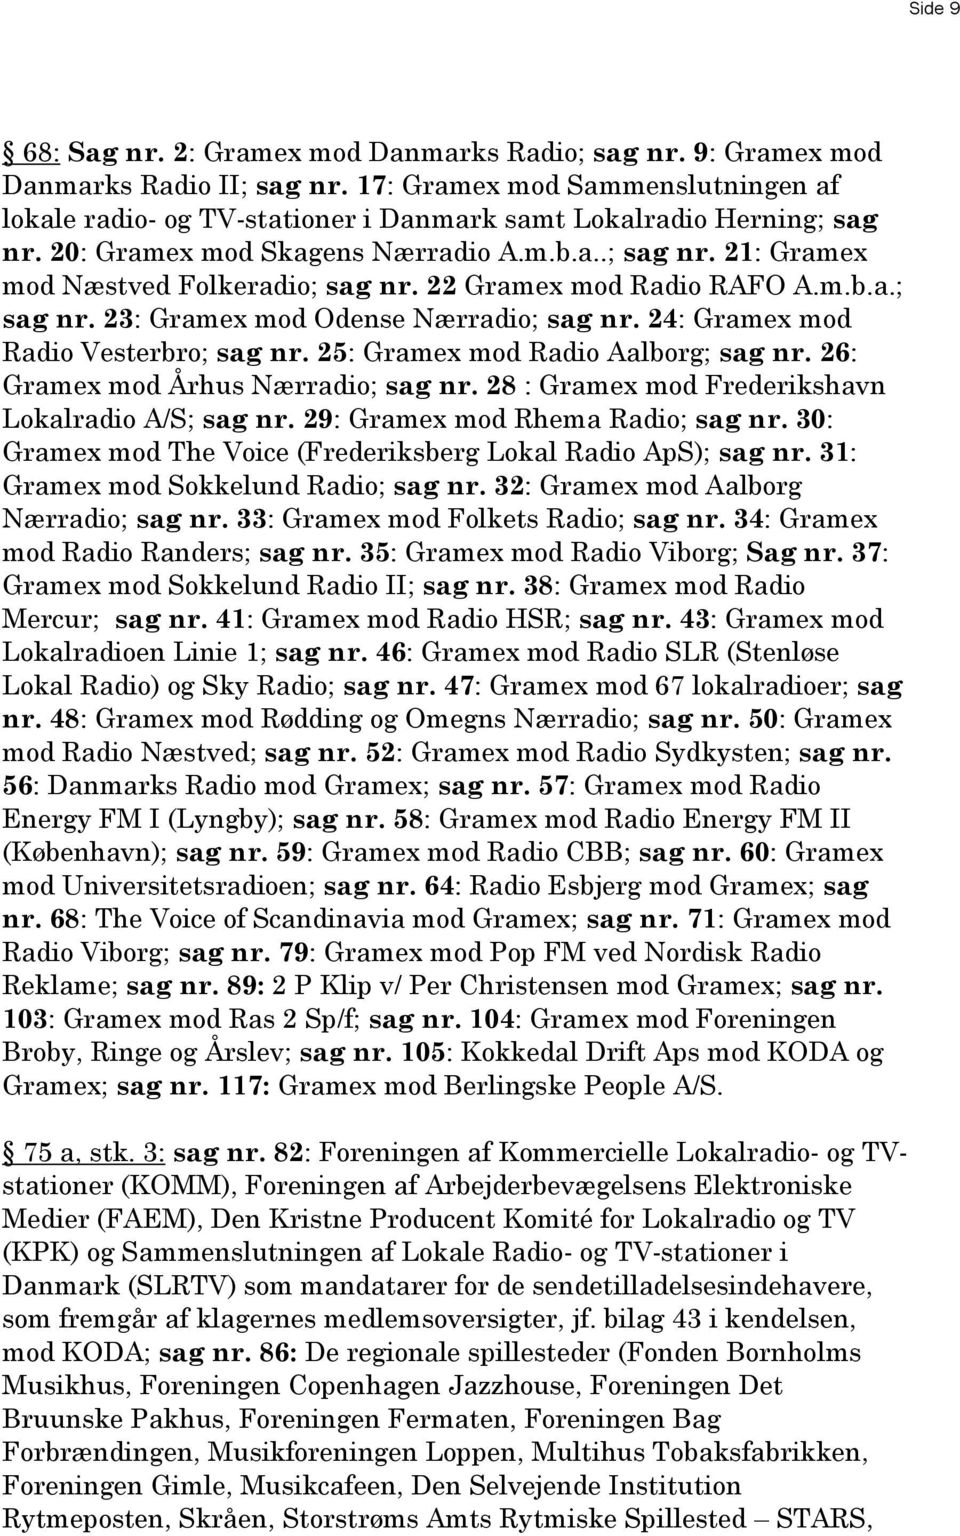 22 Gramex mod Radio RAFO A.m.b.a.; sag nr. 23: Gramex mod Odense Nærradio; sag nr. 24: Gramex mod Radio Vesterbro; sag nr. 25: Gramex mod Radio Aalborg; sag nr. 26: Gramex mod Århus Nærradio; sag nr.